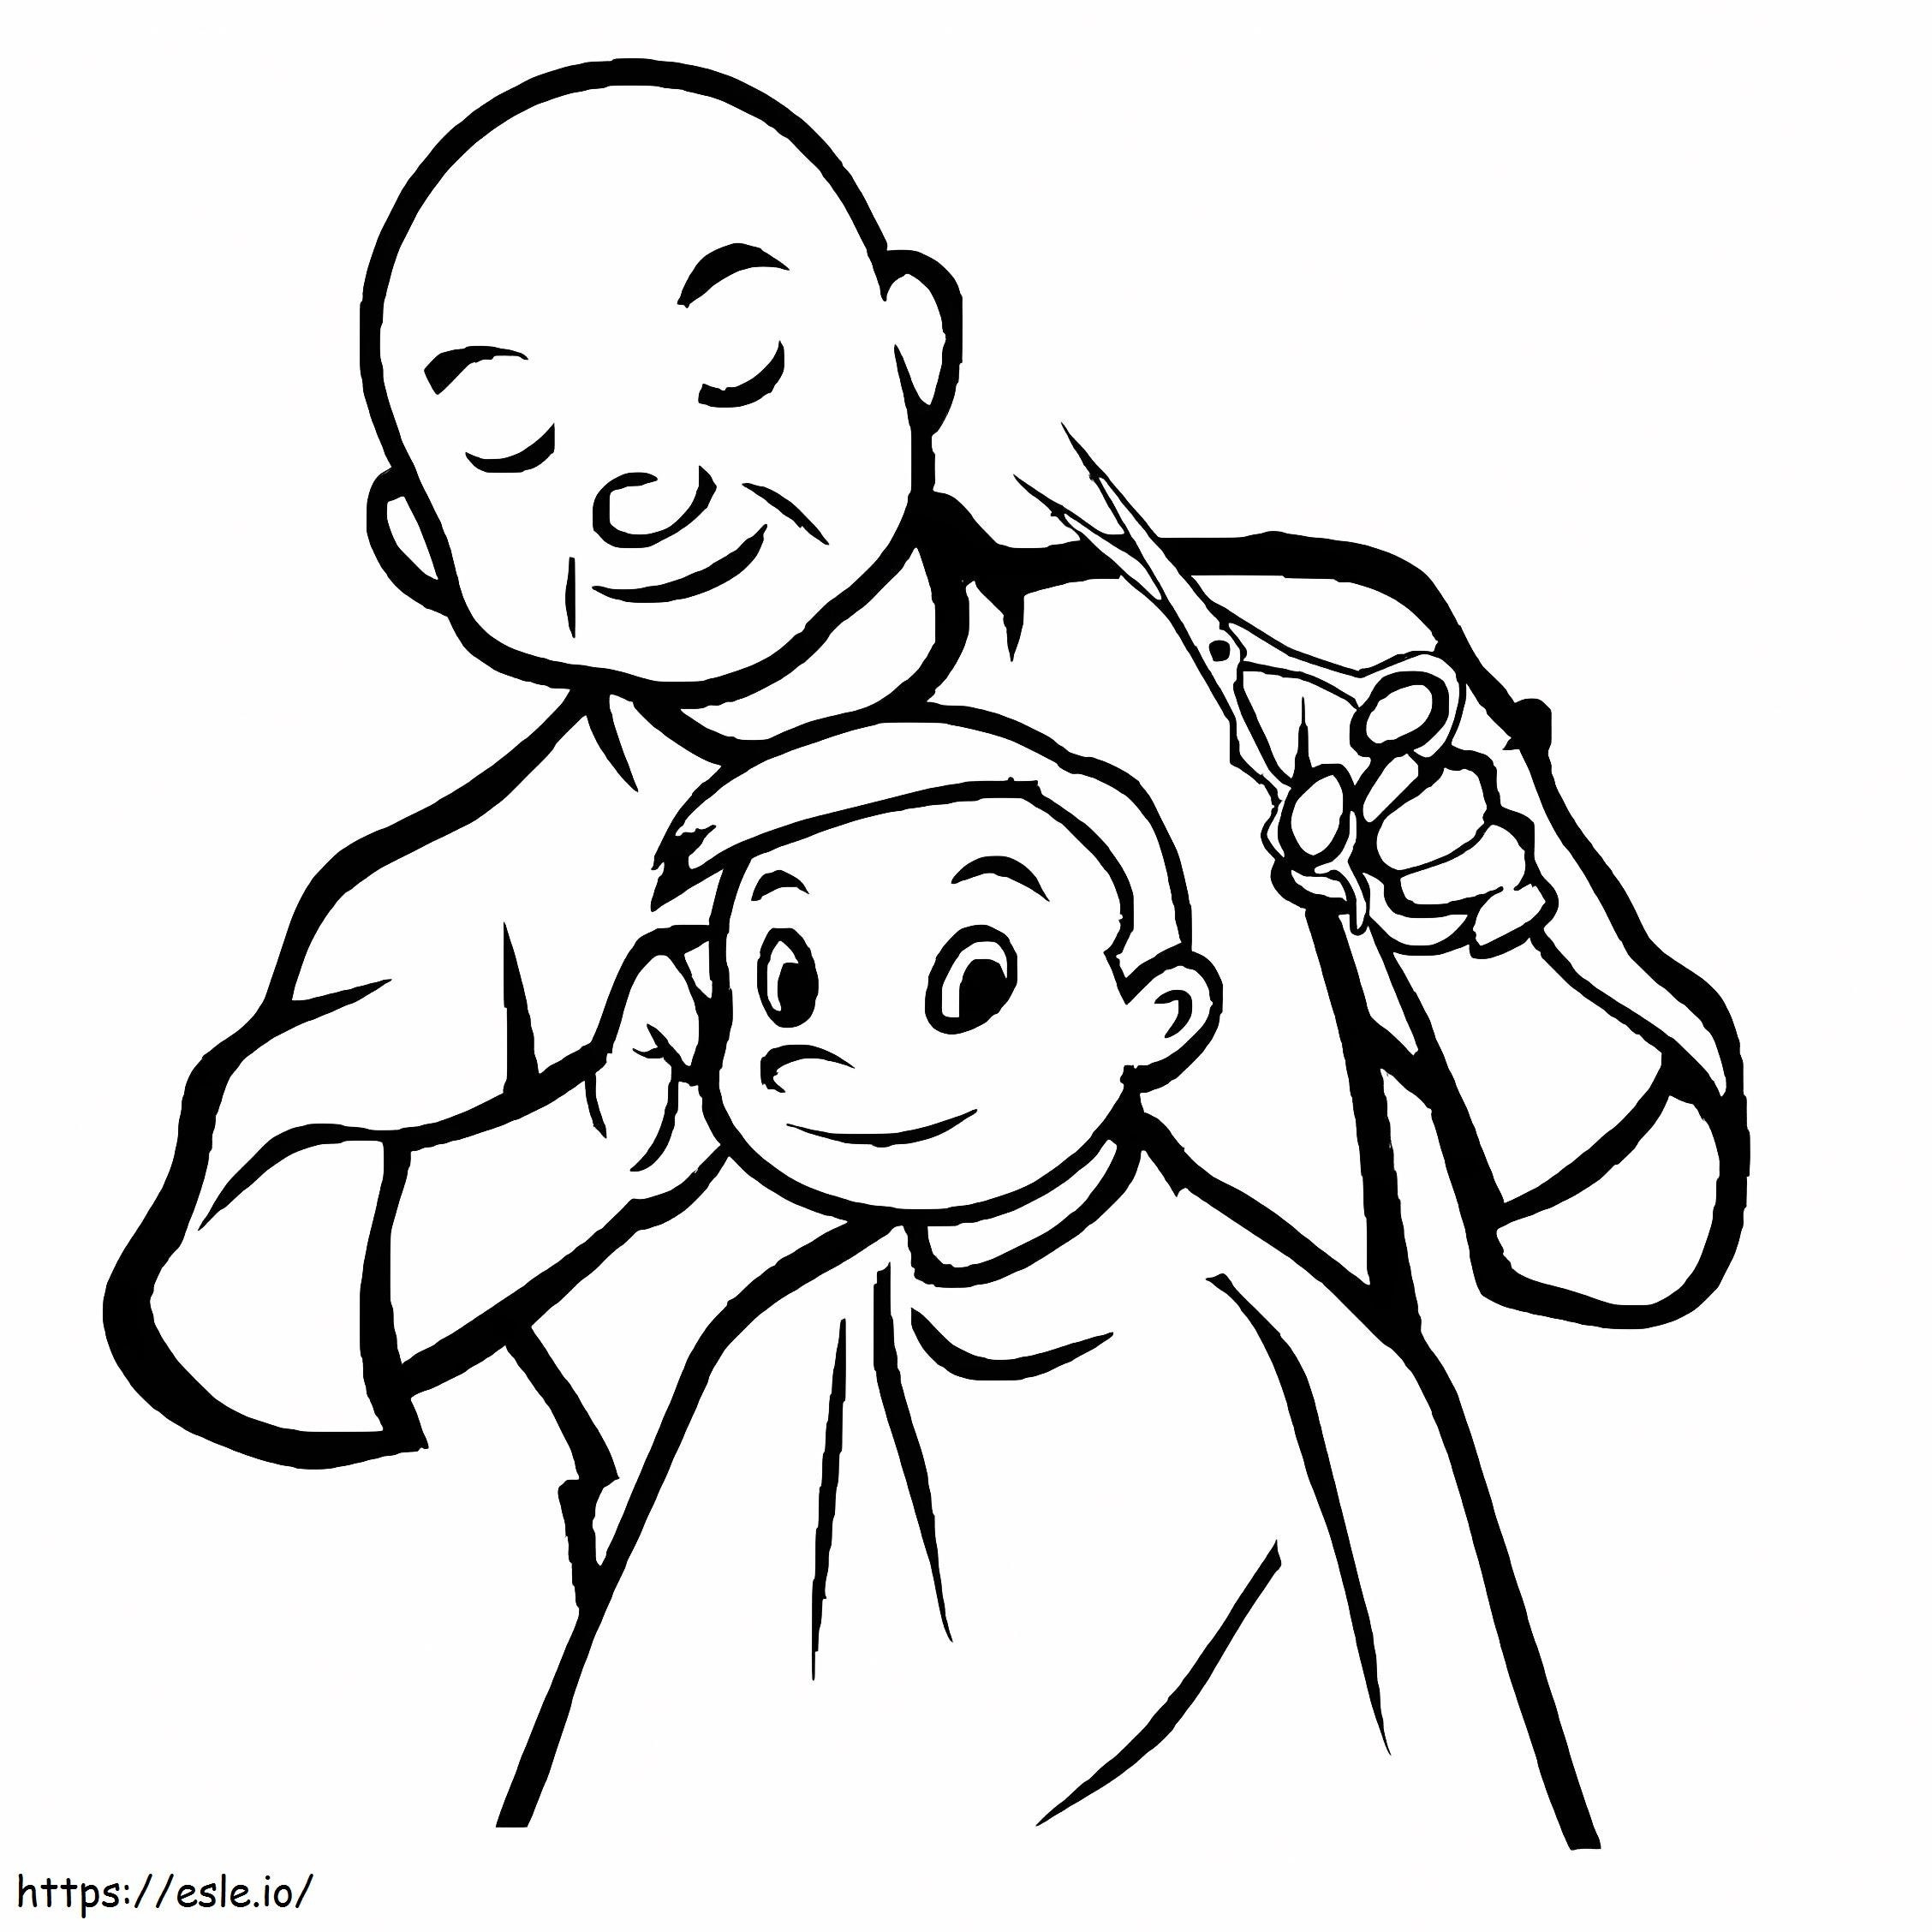 Junge und Friseur ausmalbilder